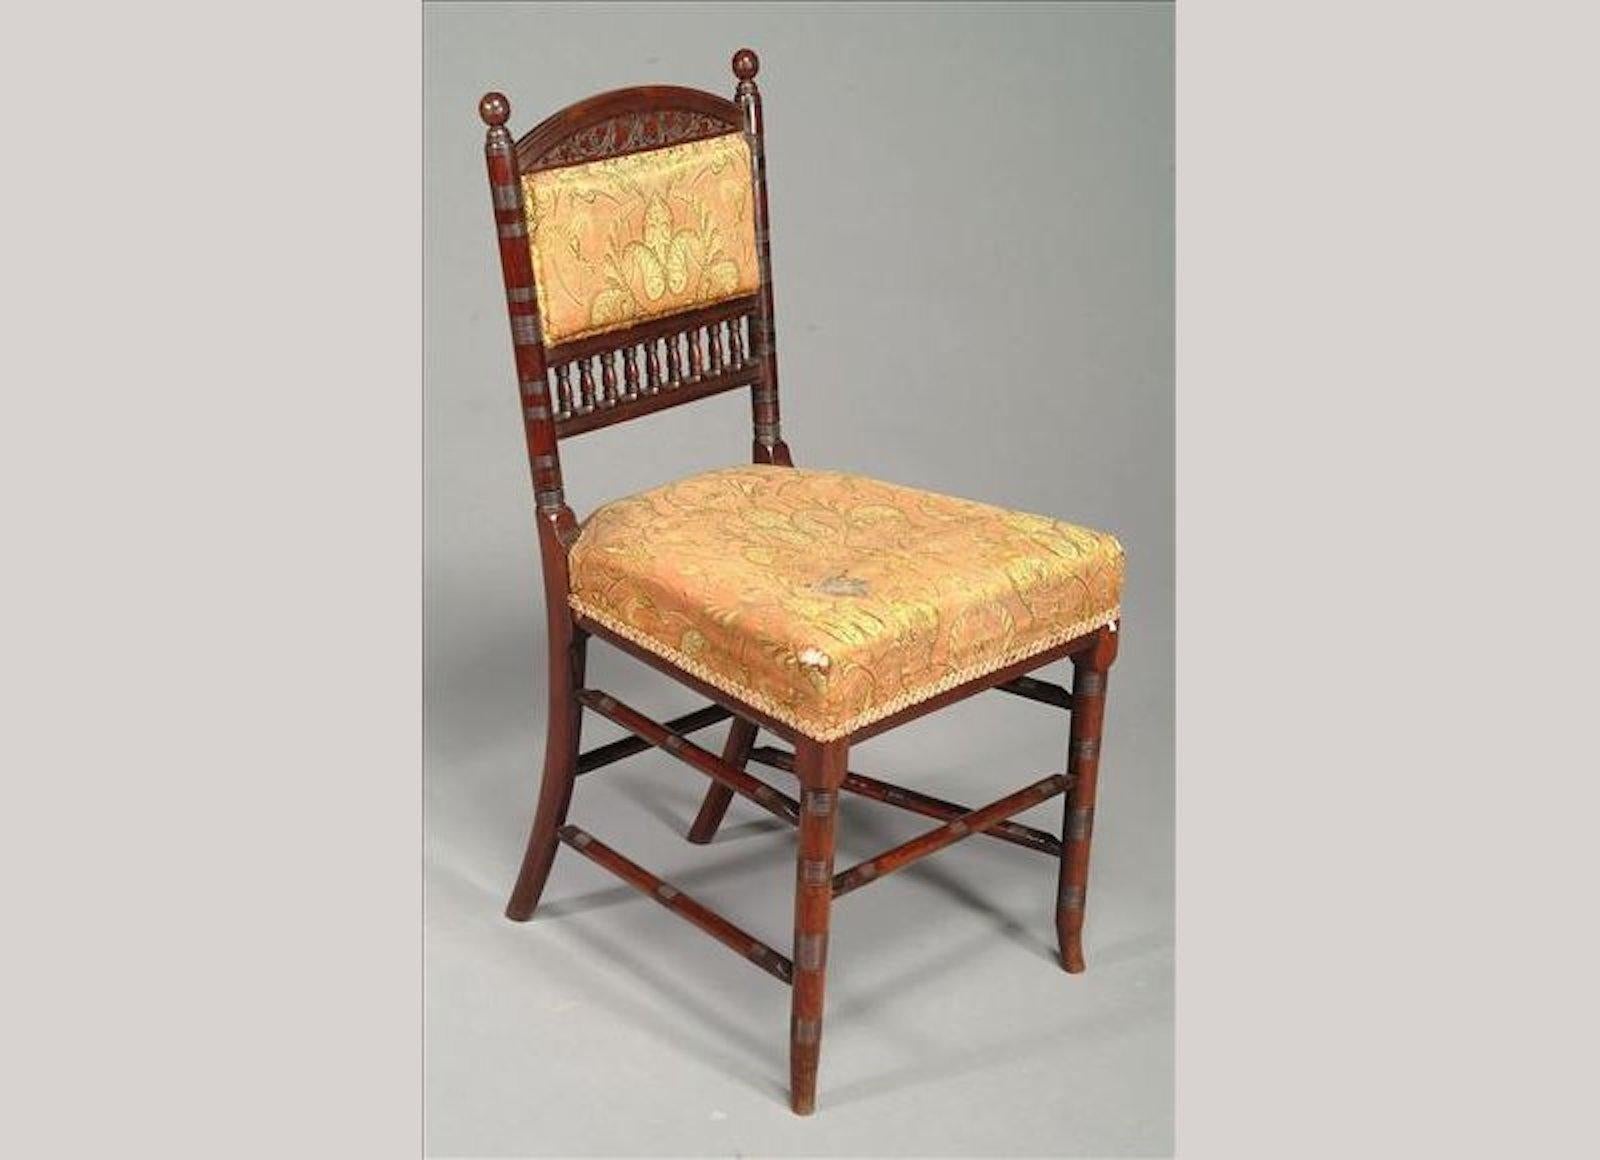 Thomas Edward Collcutt (1840 - 1924) für Collinson und Lock in London.
Eine Rosenholz-Sitzgruppe für den Salon in Museumsqualität bestehed aus zwei Stillsesseln und Beistellstühlen. Bestehend aus: vier Beistell- oder Esszimmerstühlen, einem